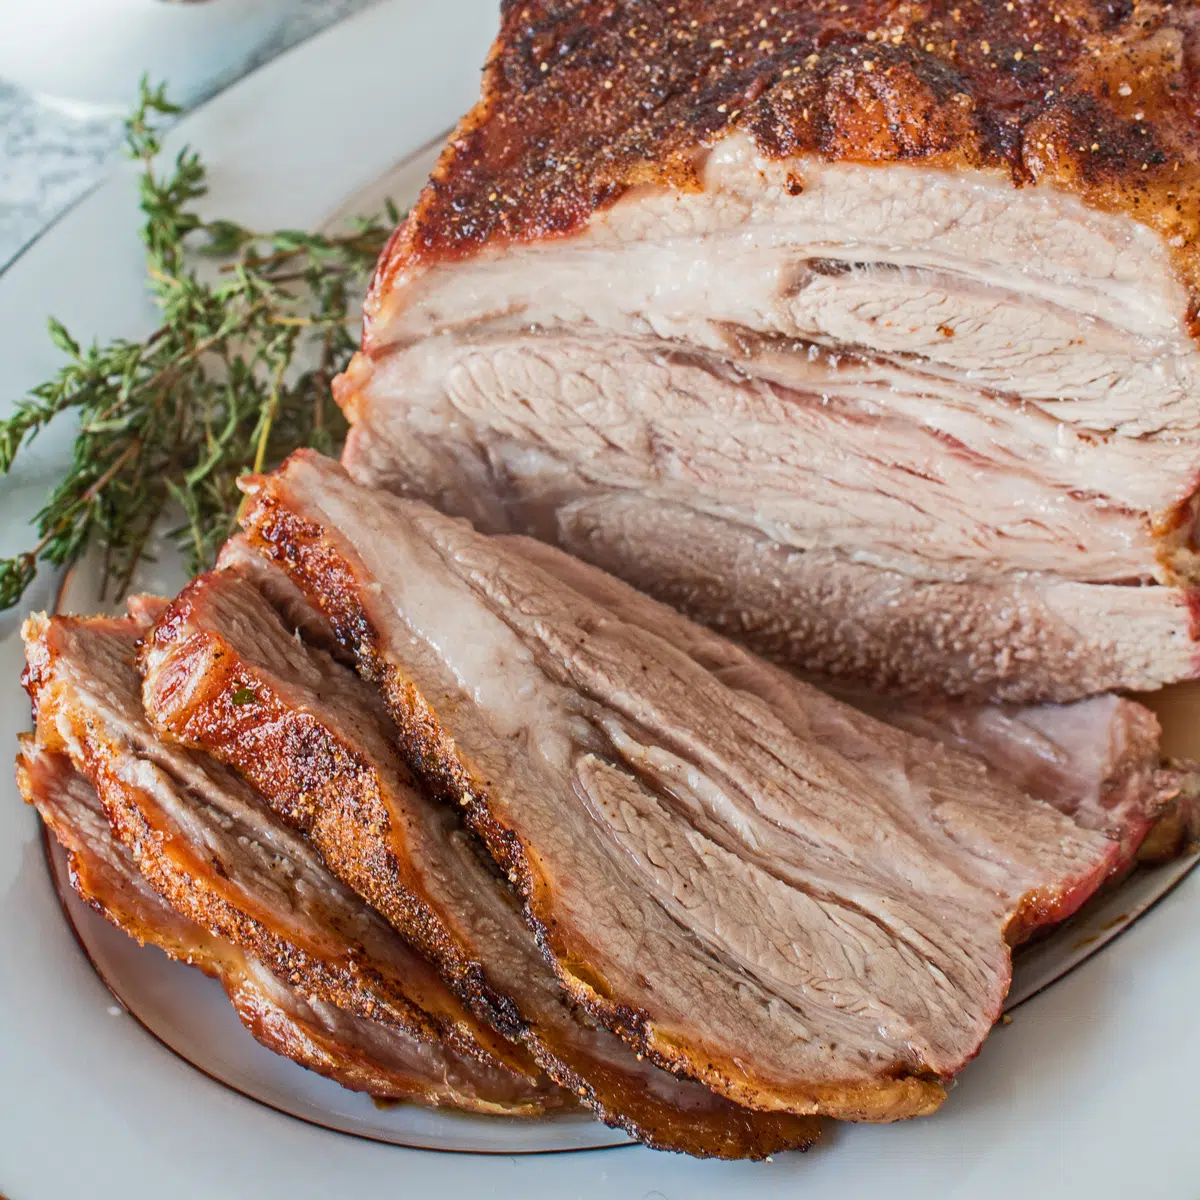 Dilimlenmiş bir servis tabağında domuz omzu rostosunun kare görüntüsü.